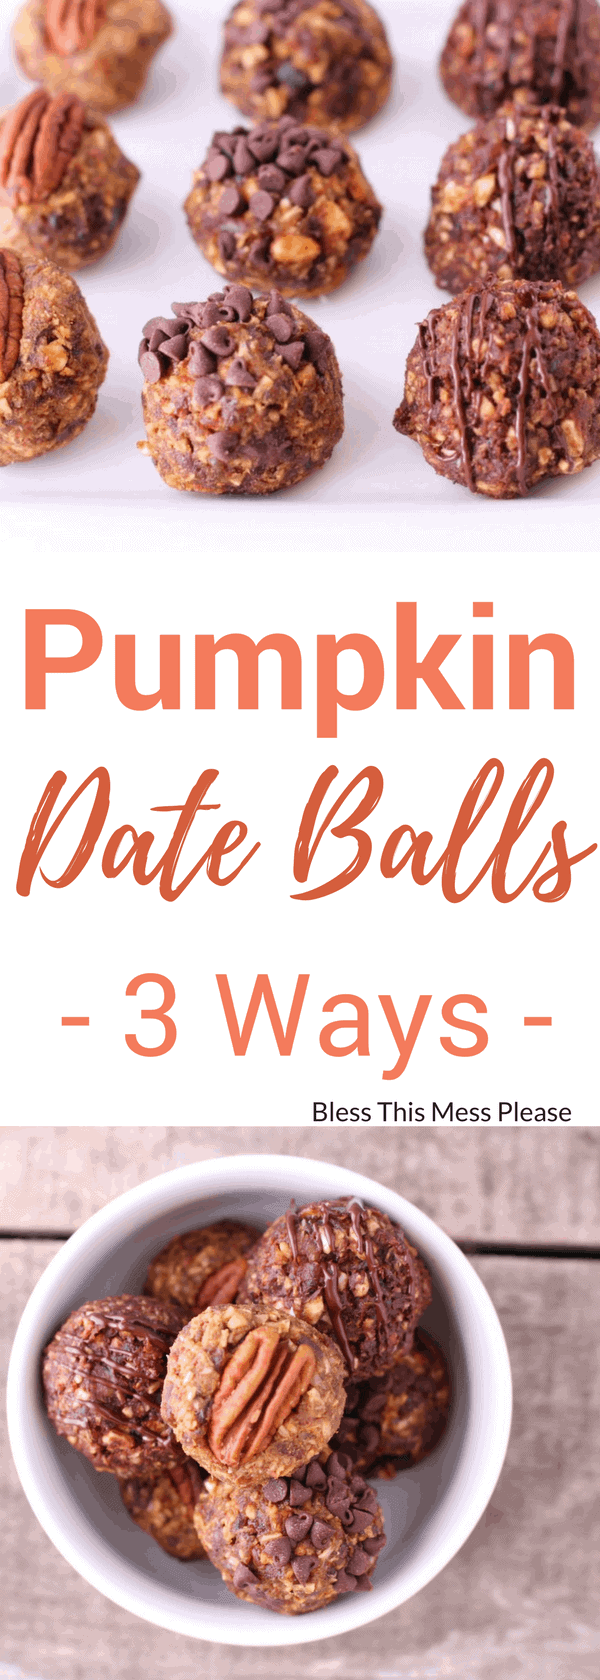 Pumpkin Date Balls 3 Ways